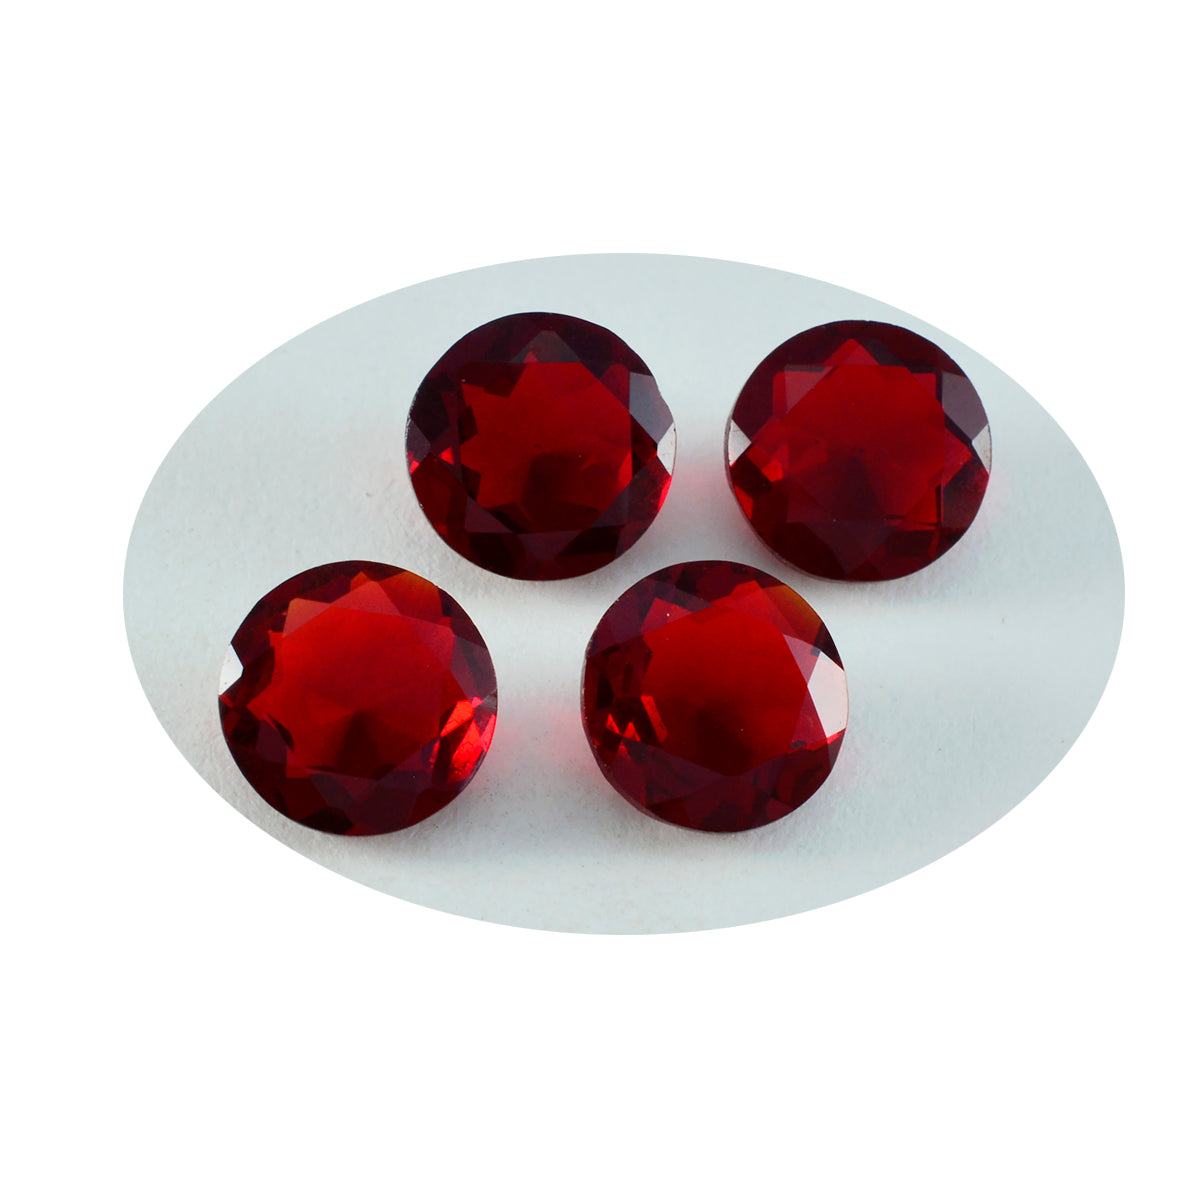 Riyogems 1 Stück roter Rubin mit CZ, facettiert, 11 x 11 mm, runde Form, hübsche Qualitätsedelsteine